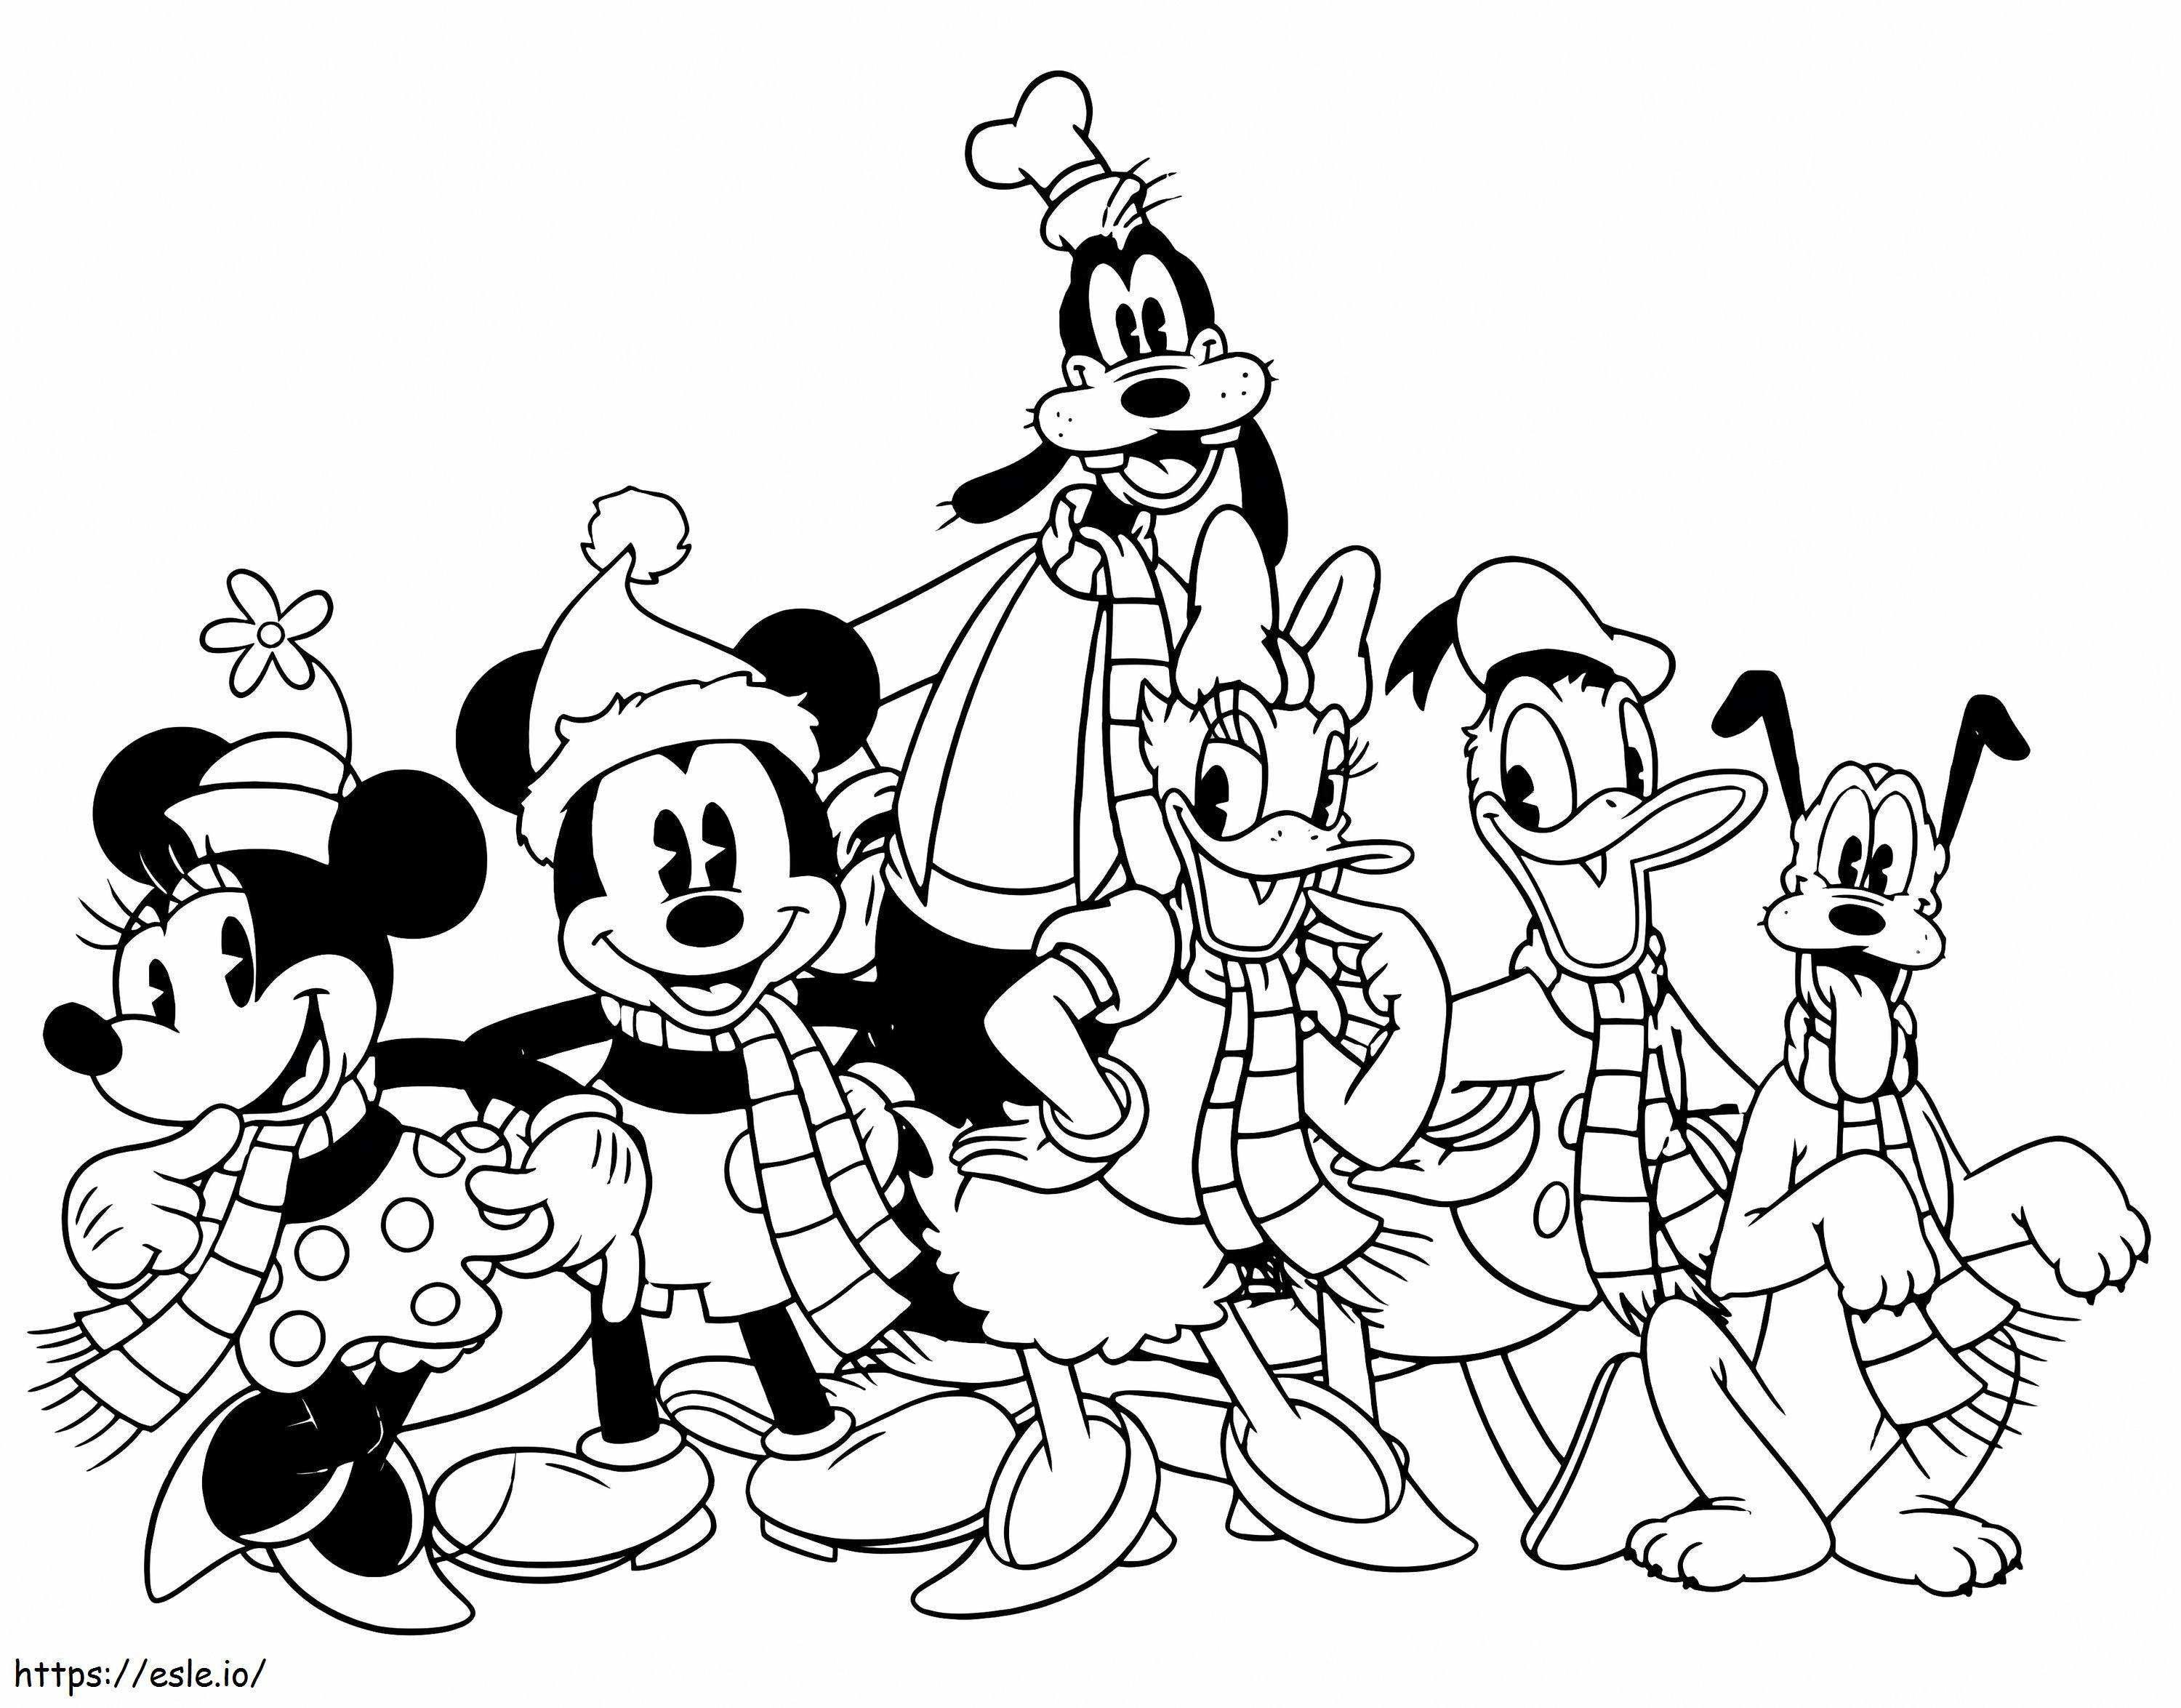 Personagens felizes da Disney para colorir